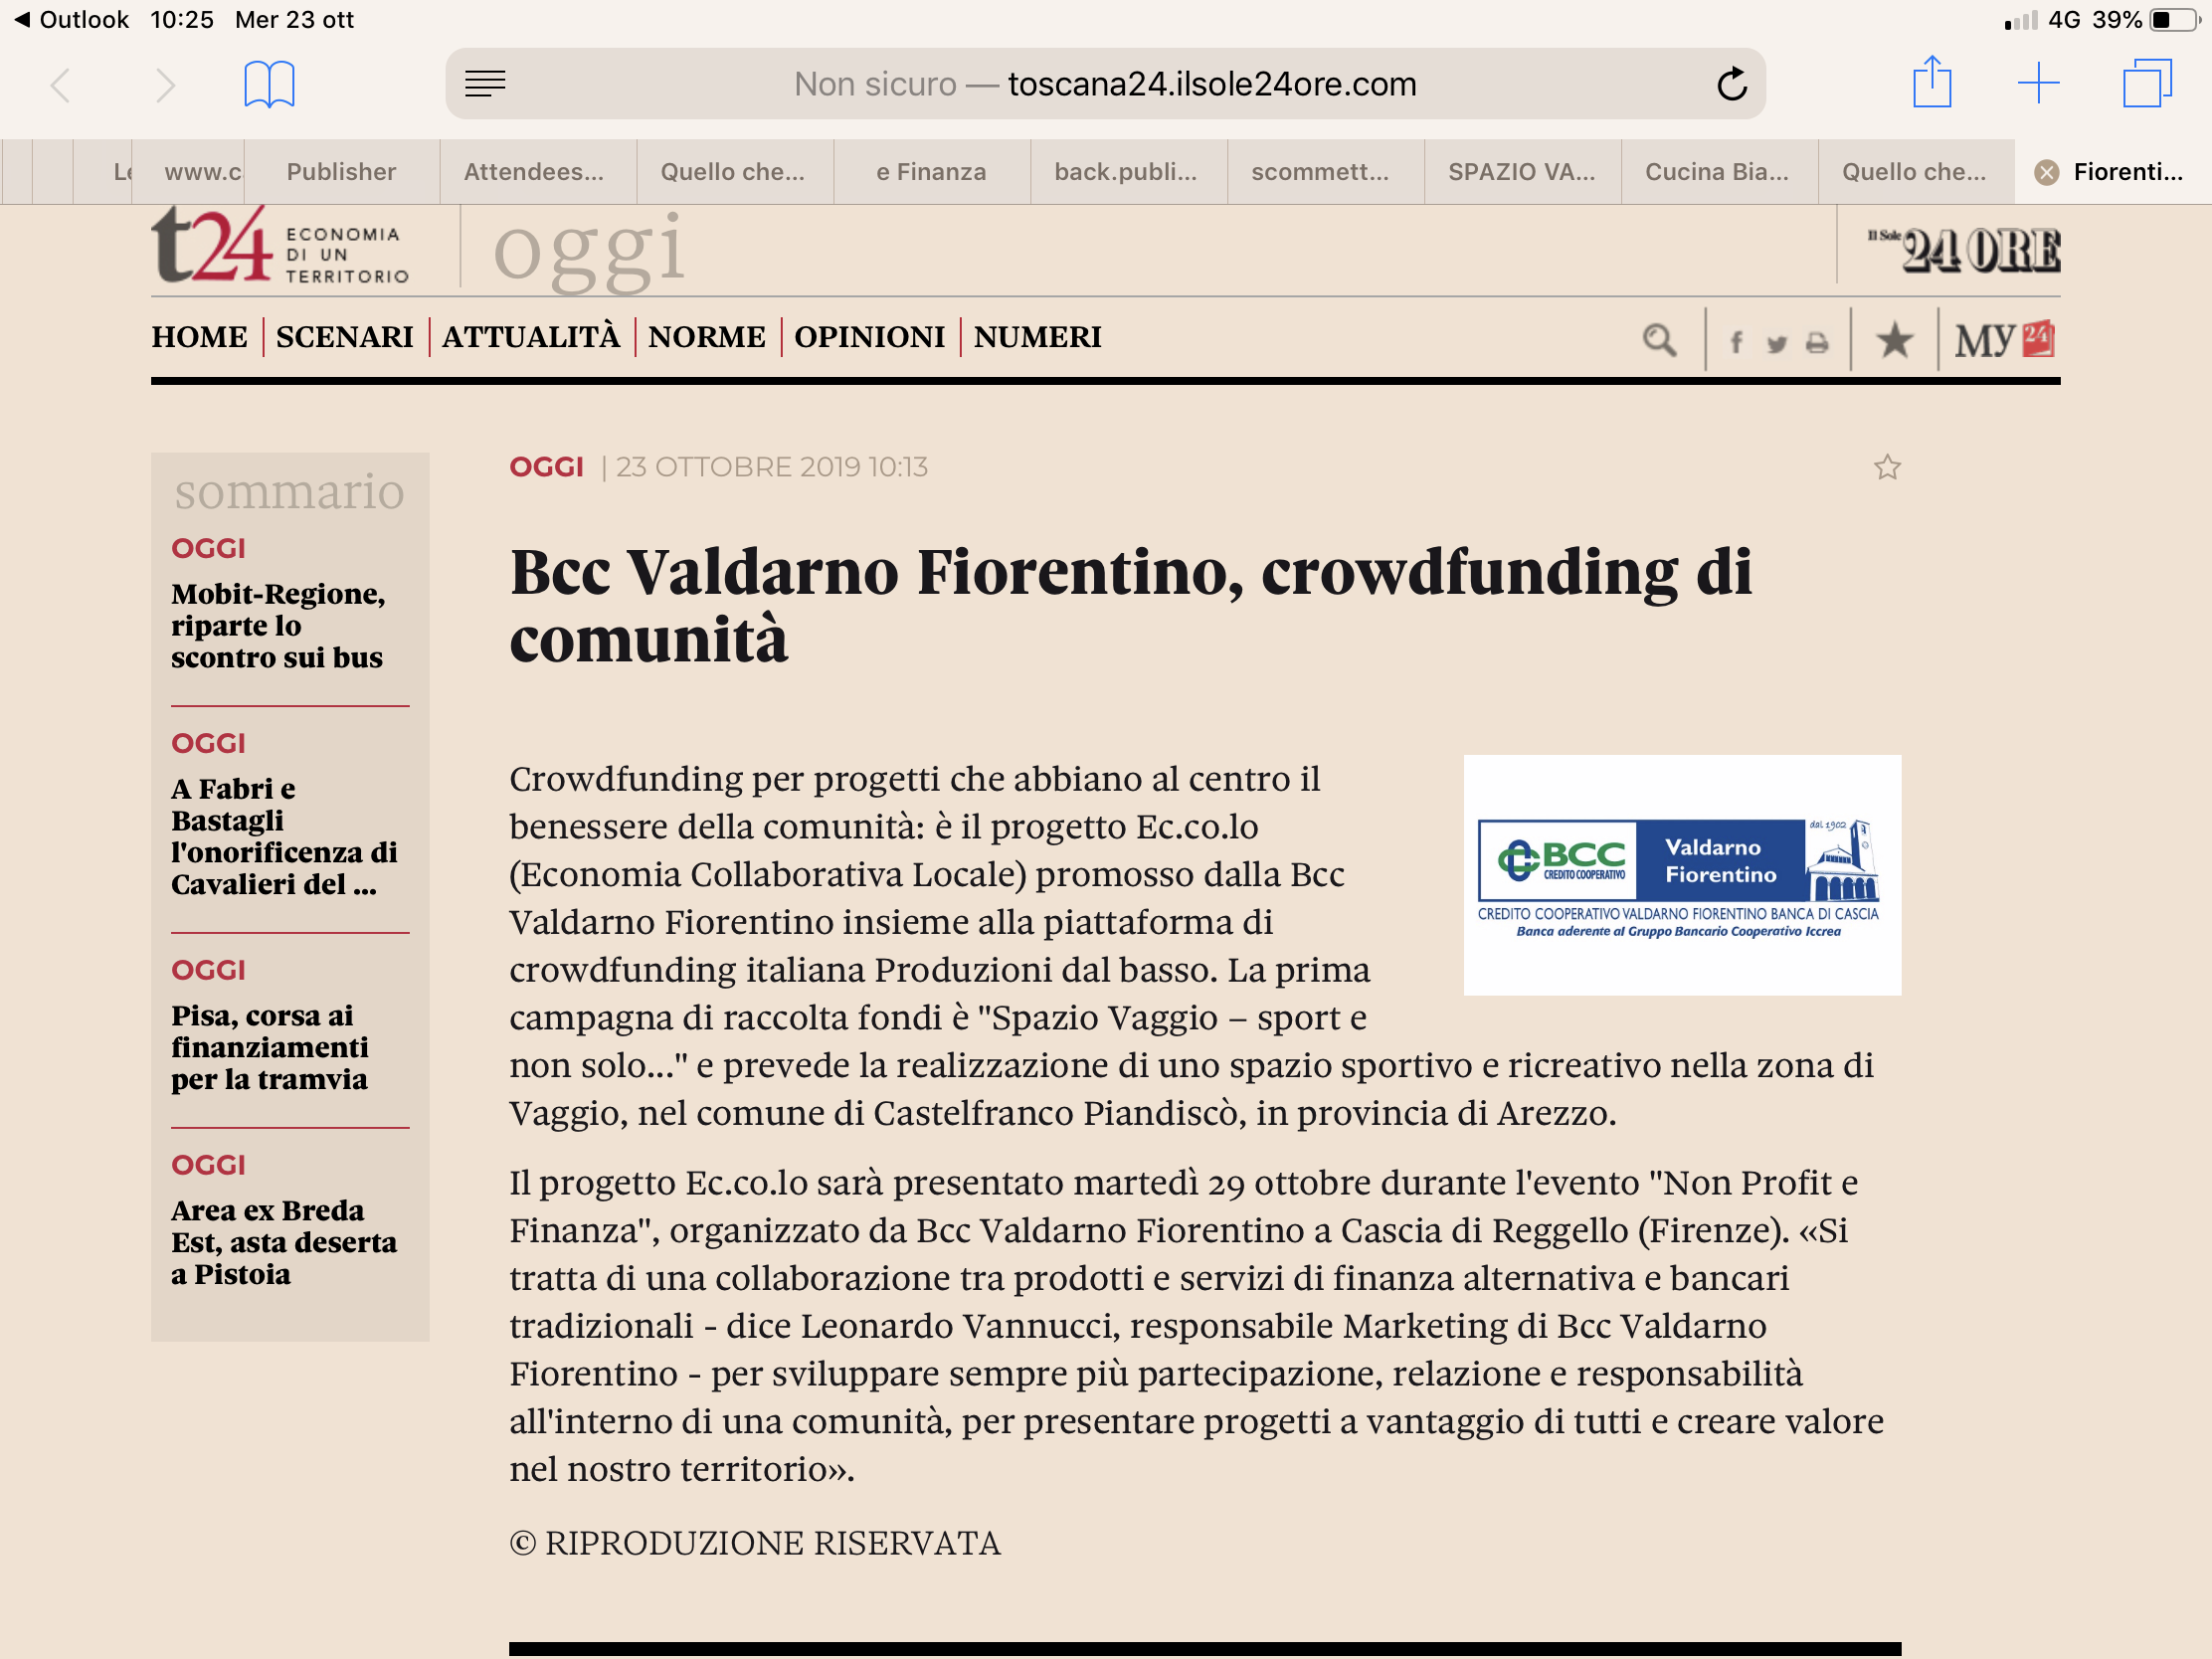 Toscana 24 - Il Sole 24 ore: BCC Valdarno Fiorentino, crowdfunding di comunità.